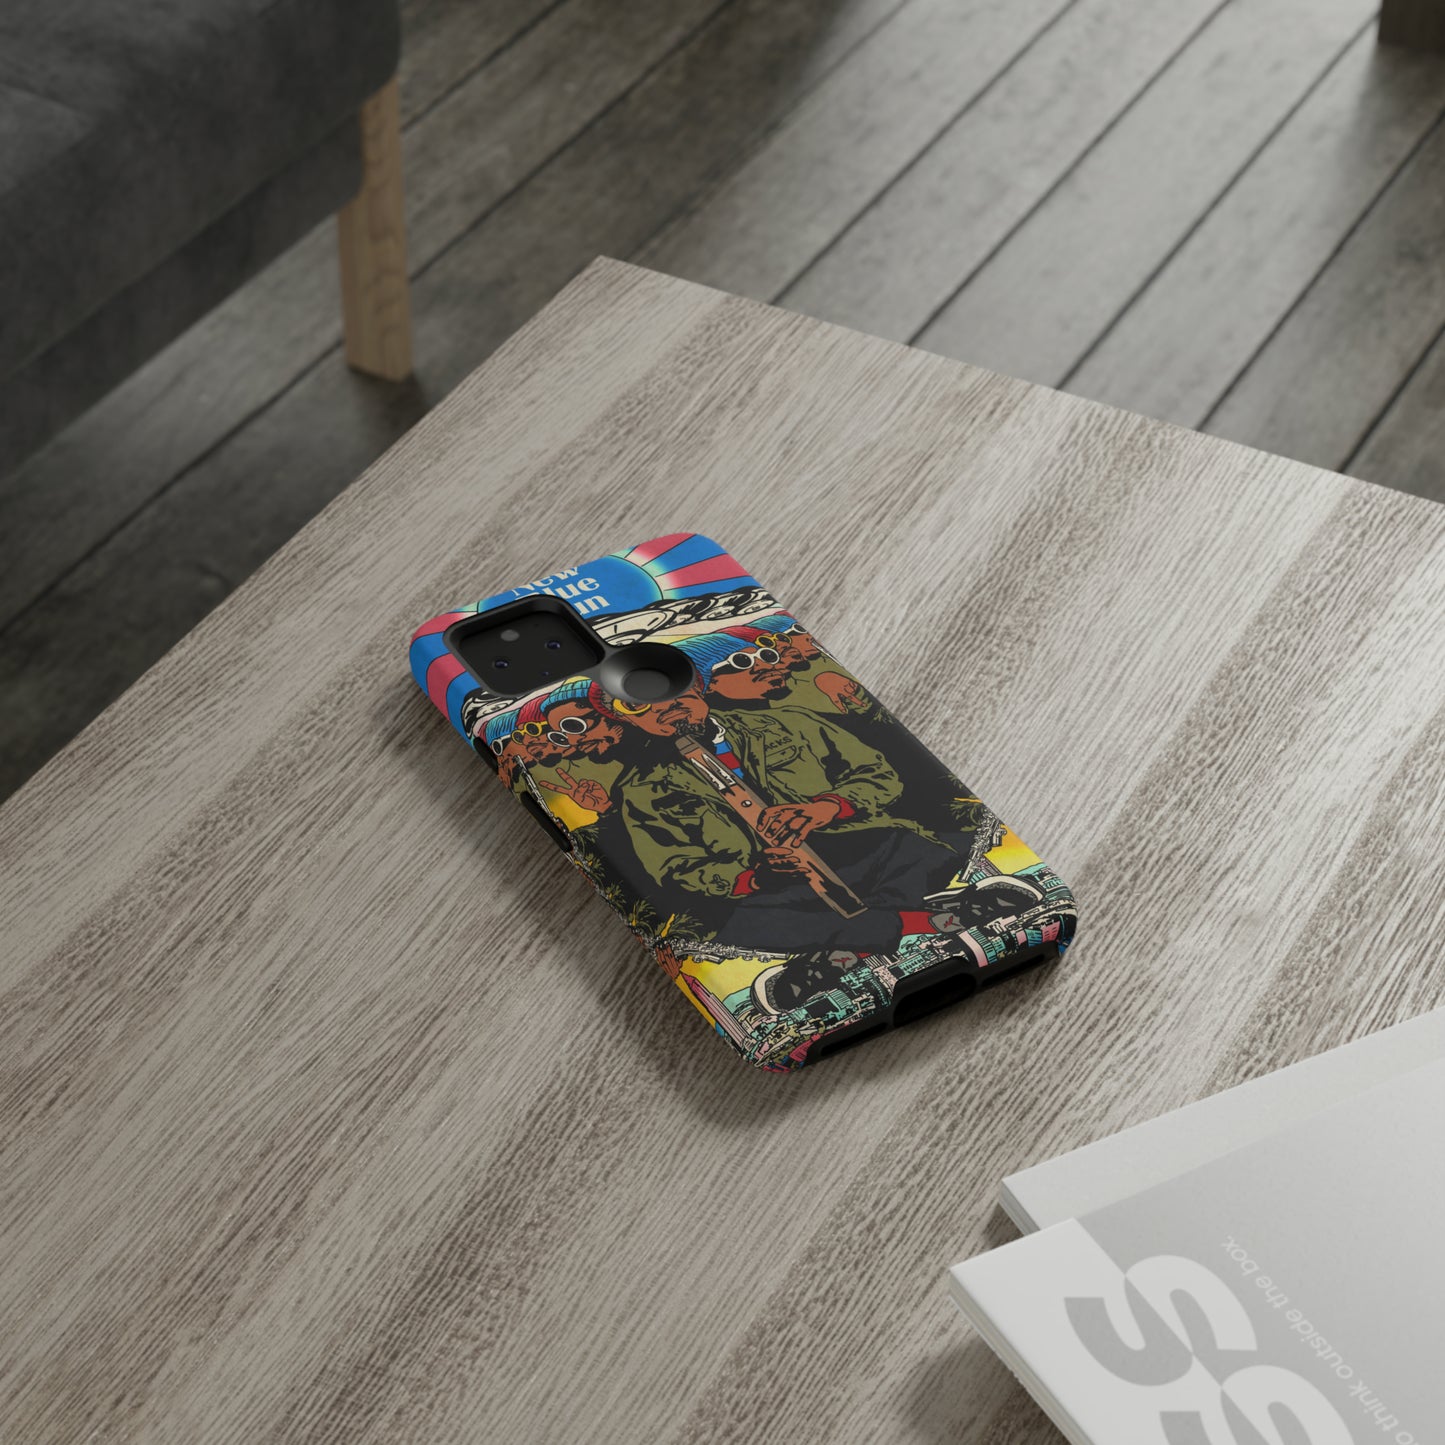 André 3000 - New Blue Sun - Tough Phone Cases